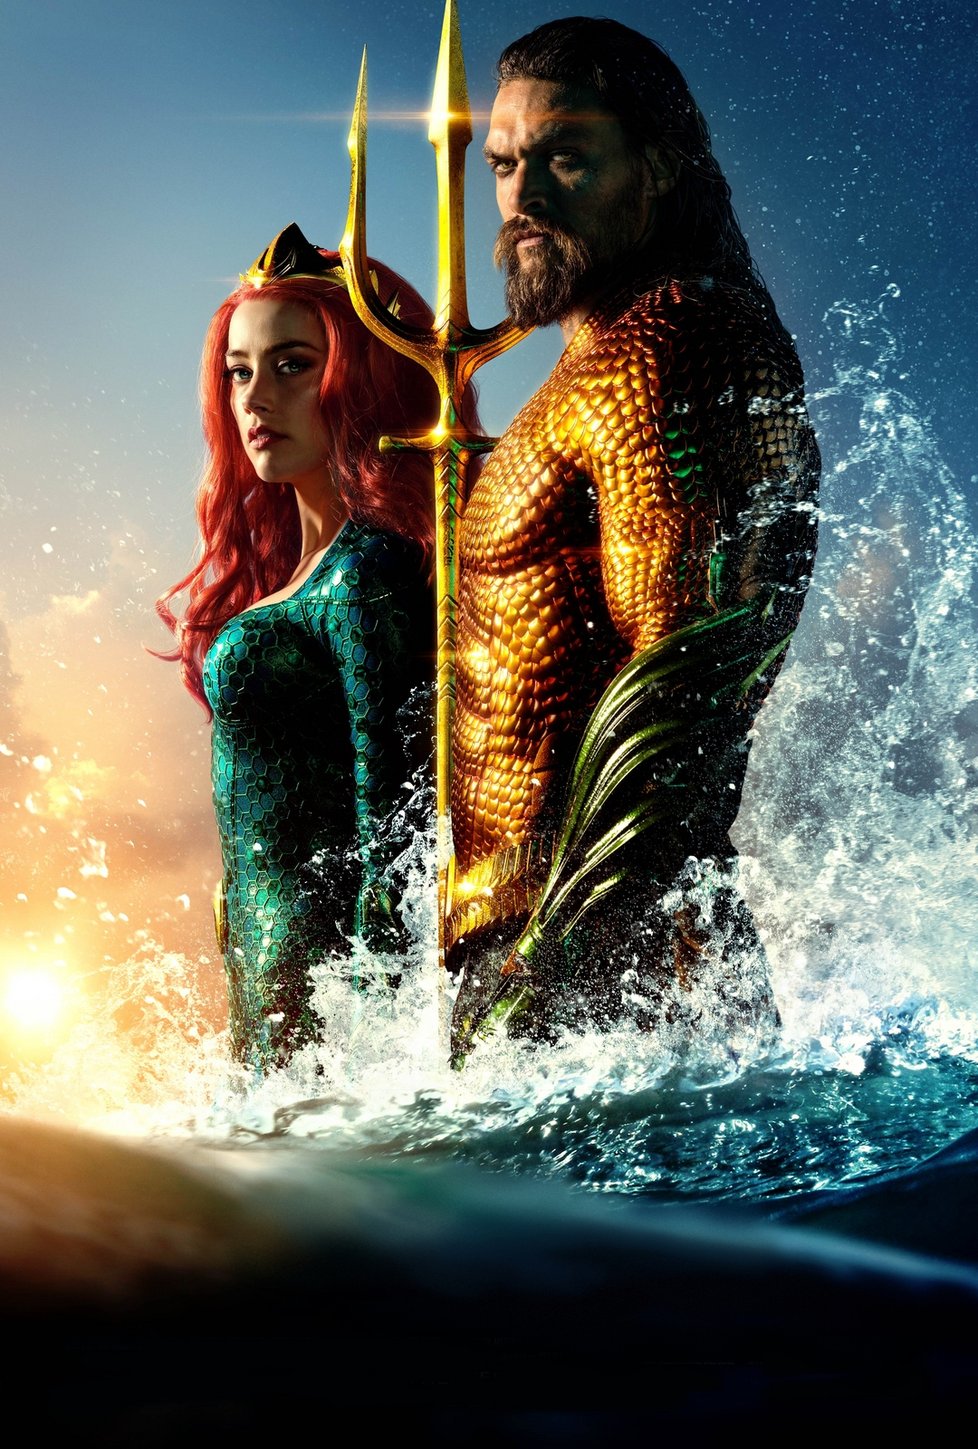 Amber by si měla po čtyřech letech zopakovat roli válečnice Mery. Jason Momoa jako Aquaman.